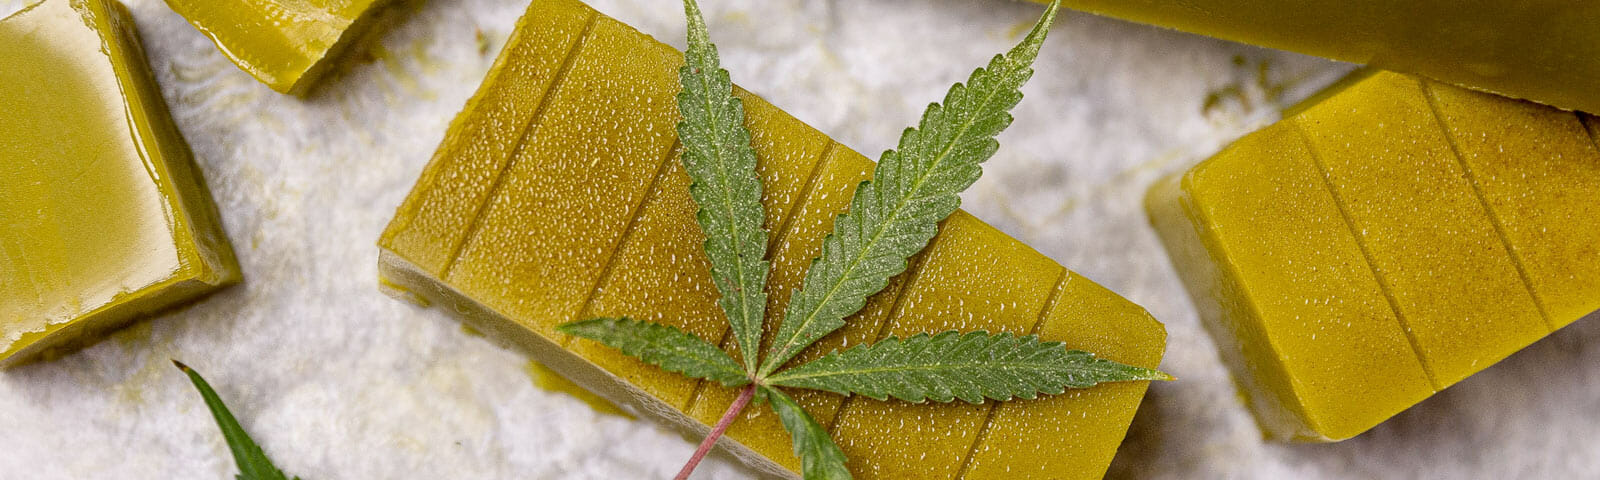 Unser einfaches Rezept garantiert dir die beste Cannabis-Butter